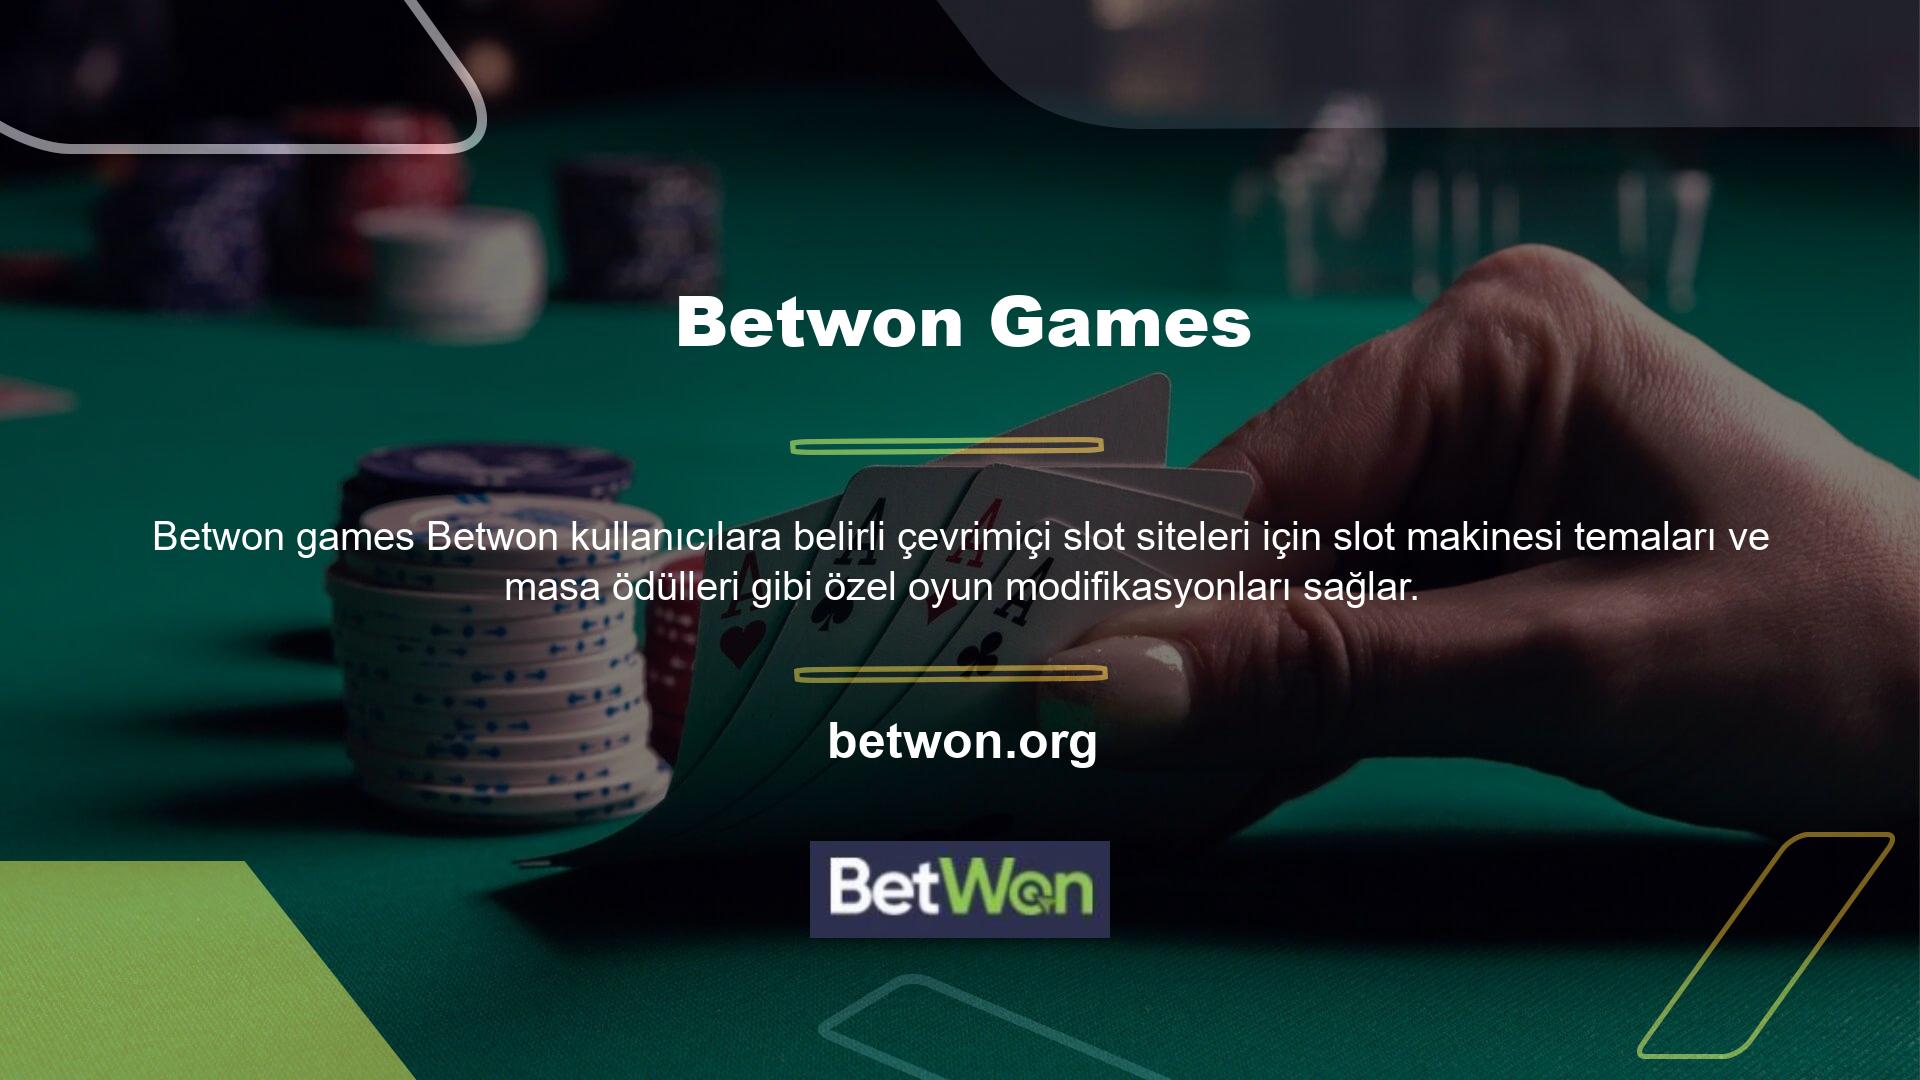 Betwon Slot Sayfası bizim tavsiye ettiğimiz seçimdir